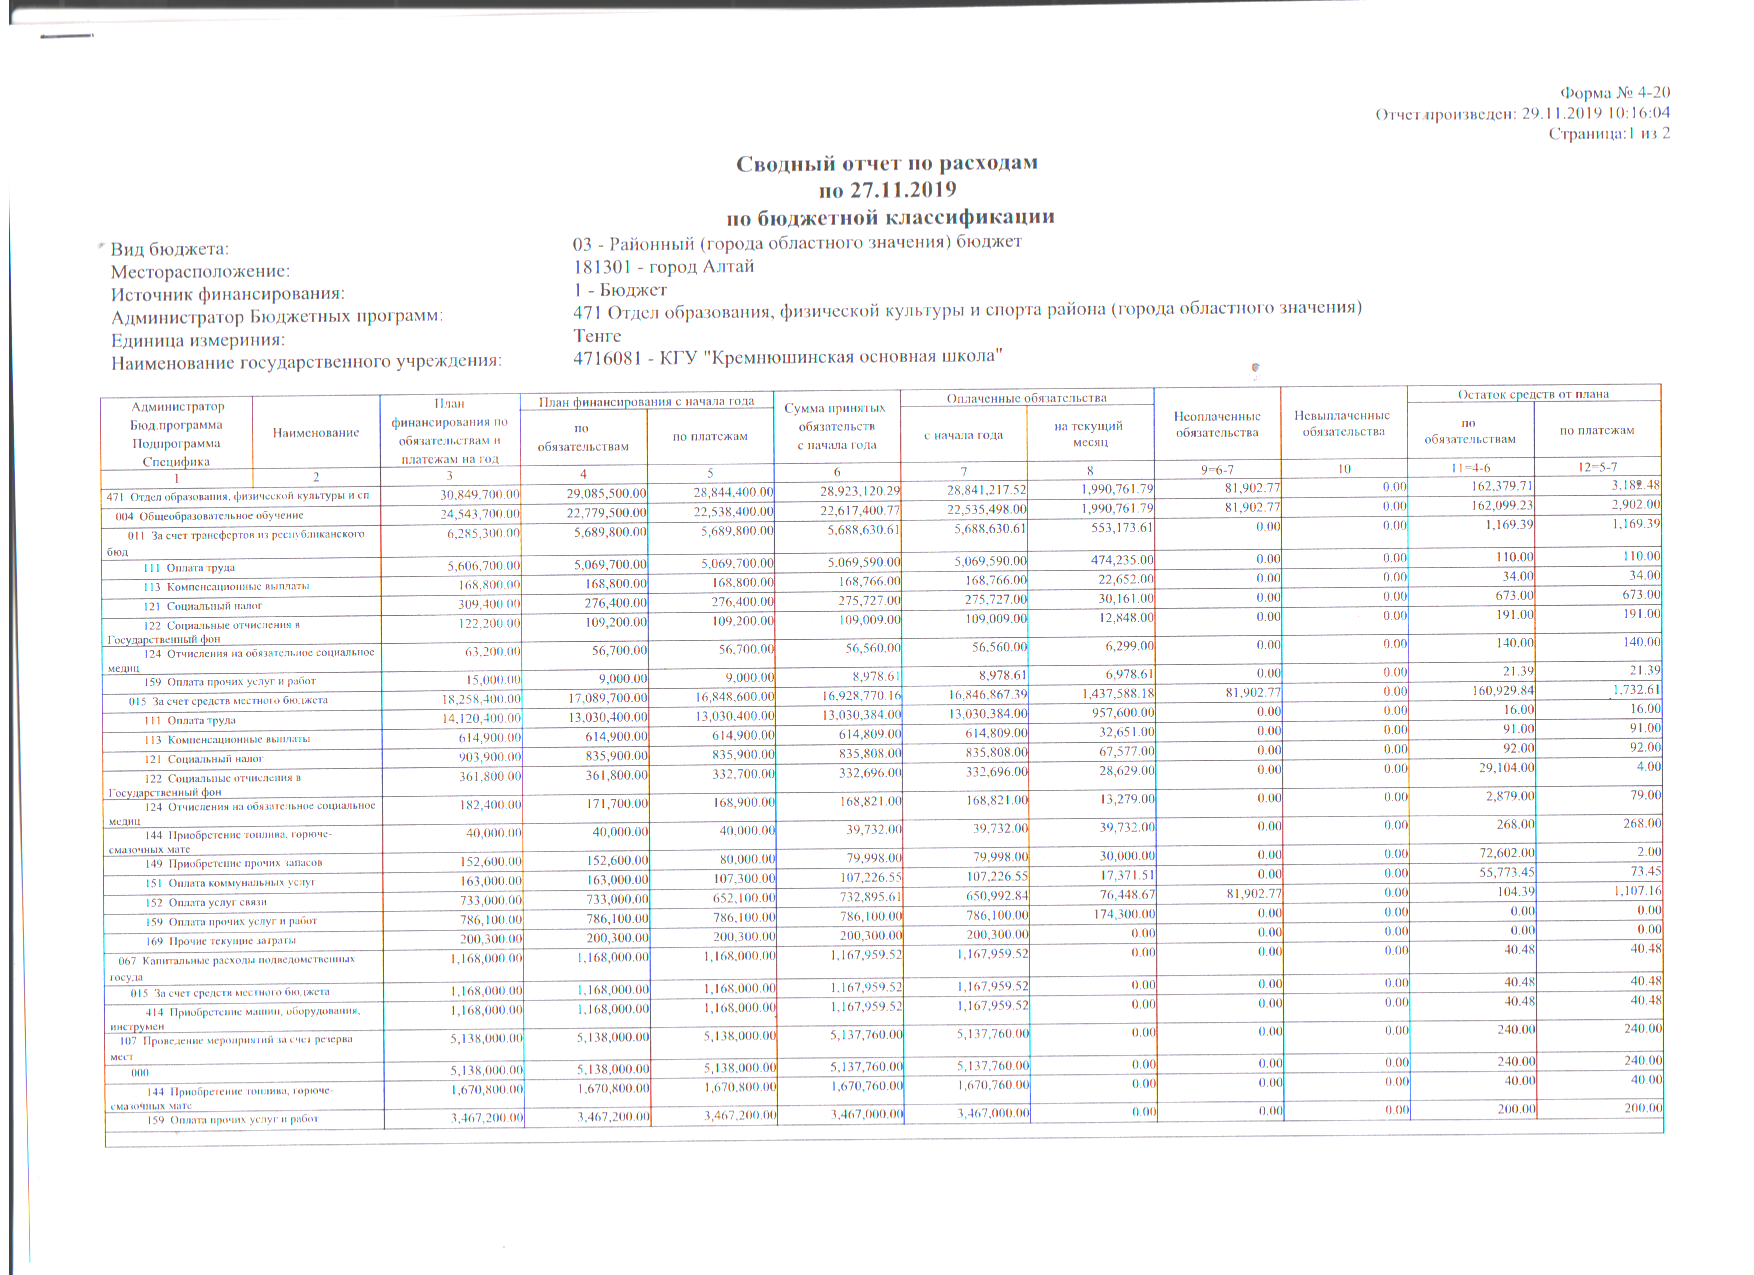 Сводный отчет по расходам на 27 ноября 2019 года по бюджетной классификации